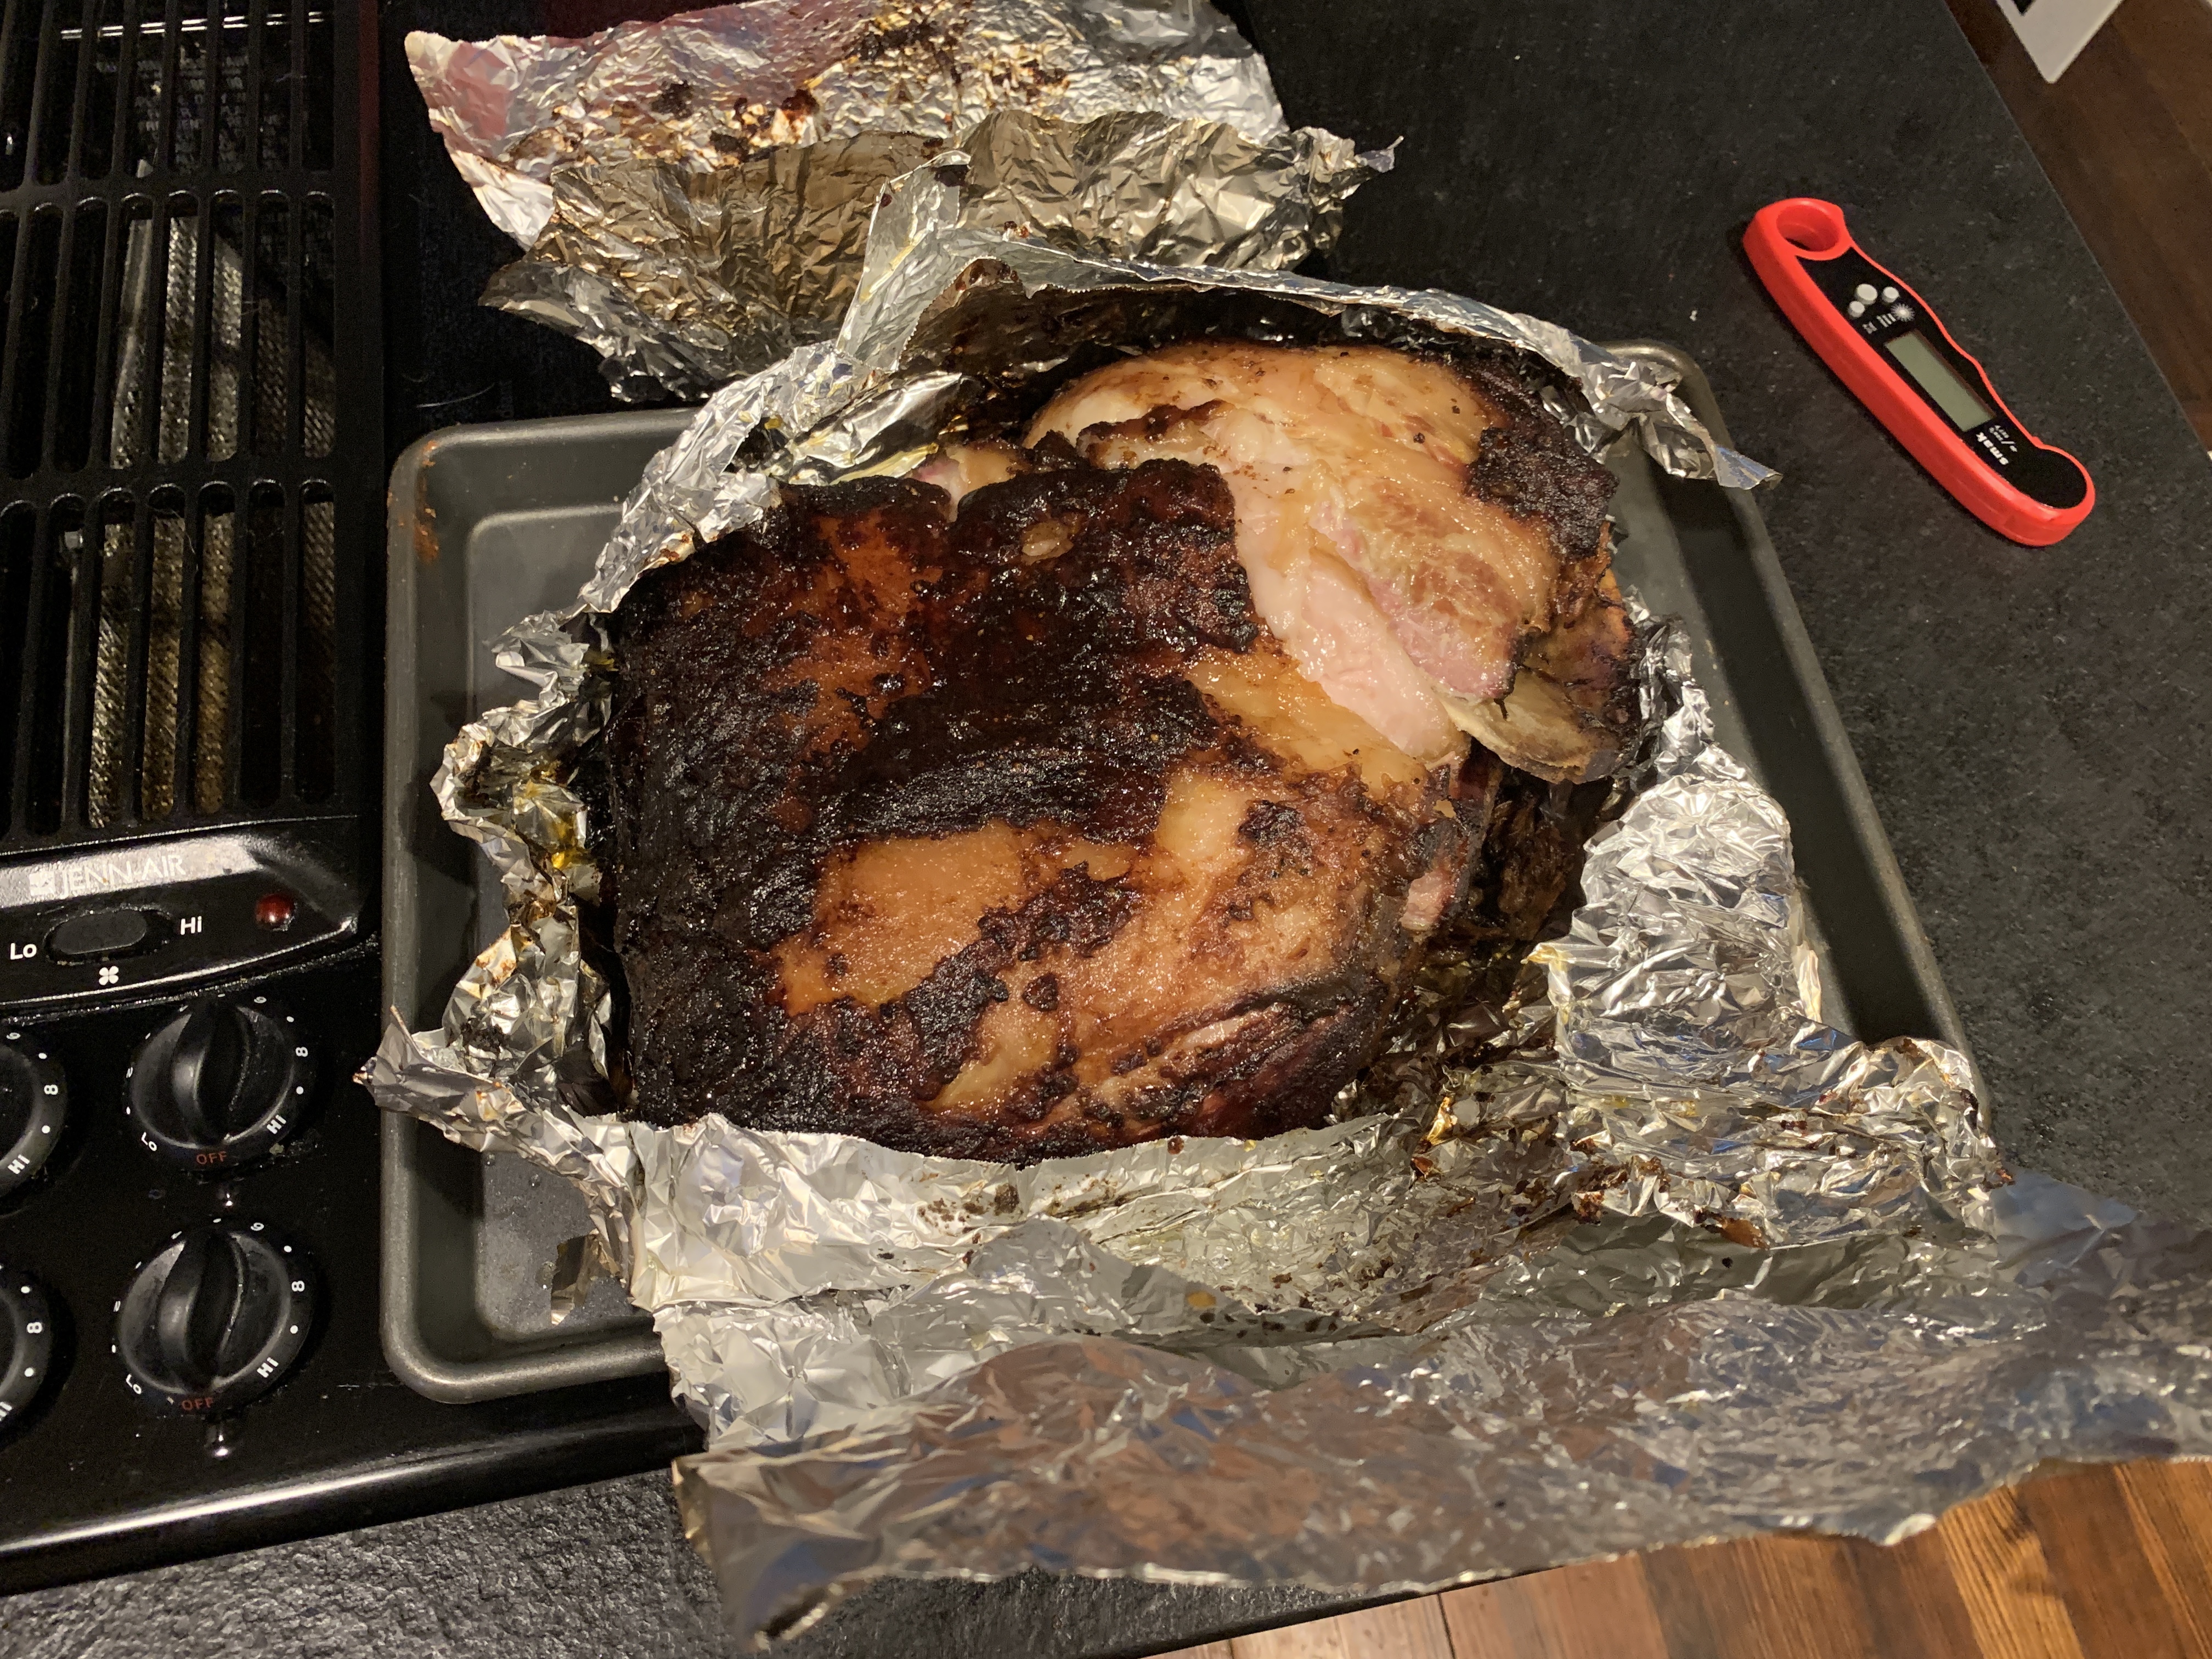 Pork shoulder finished and the foil opened.